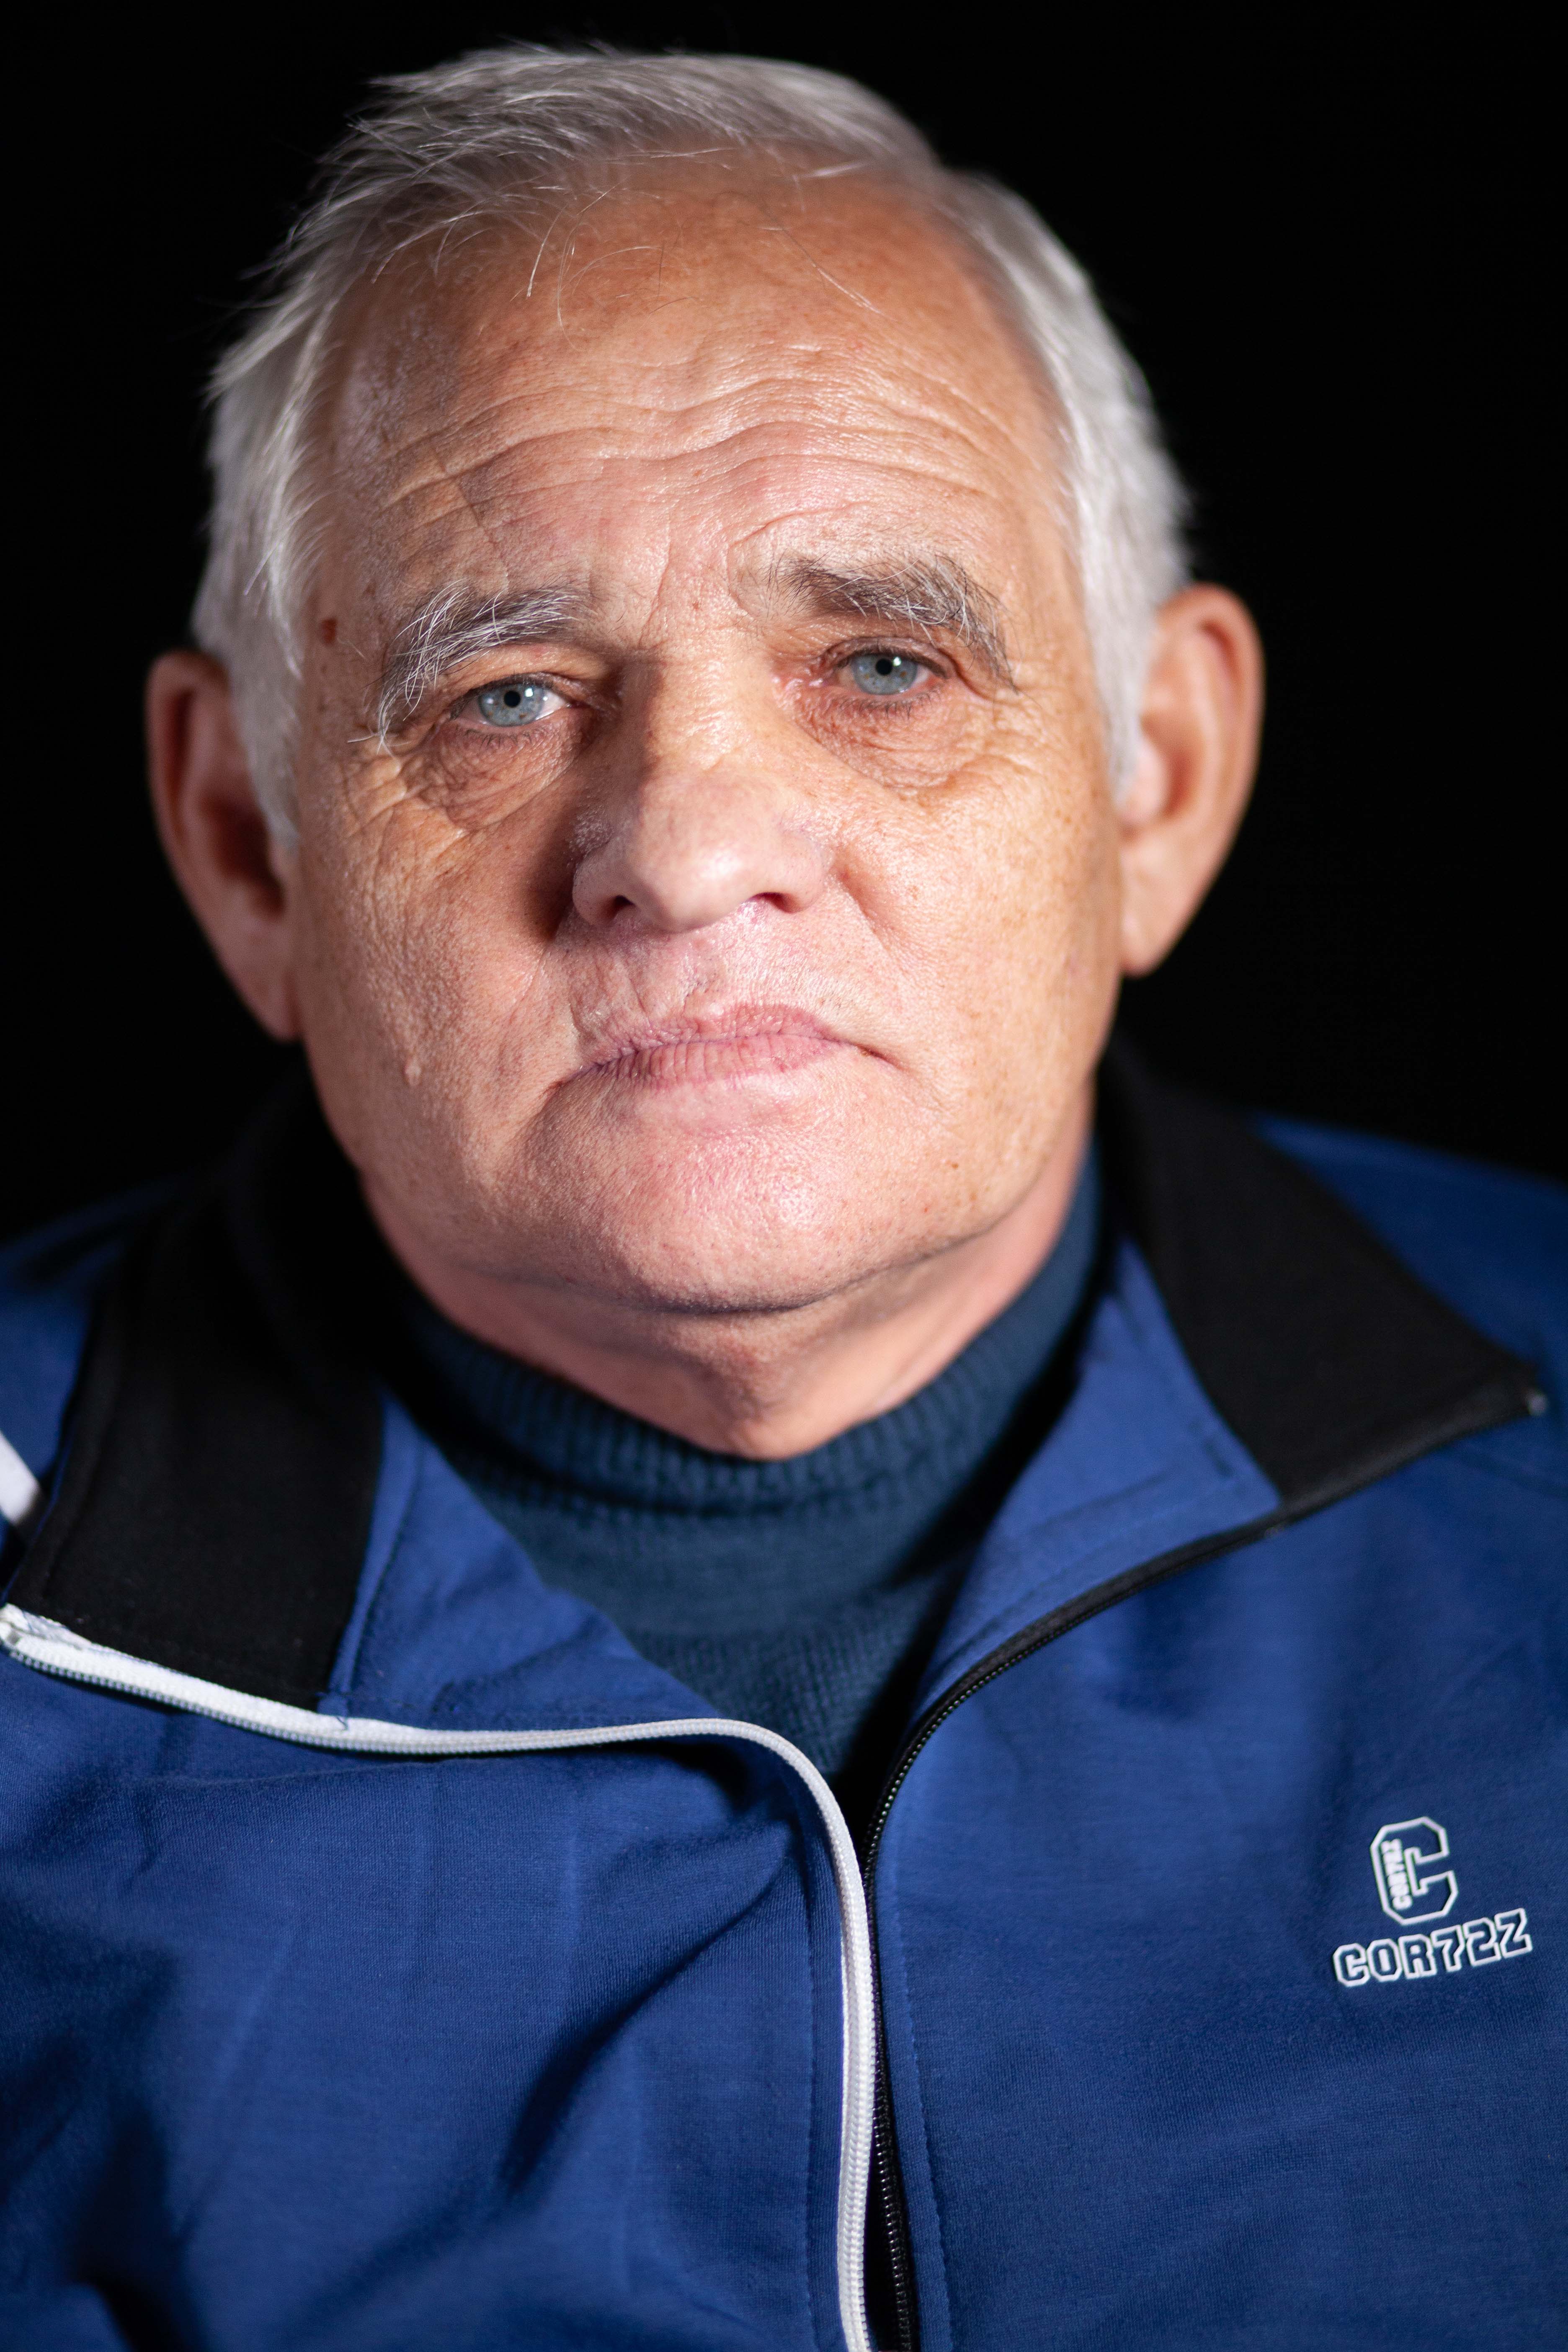 Josef Mašek, born in 1955 in Gerník